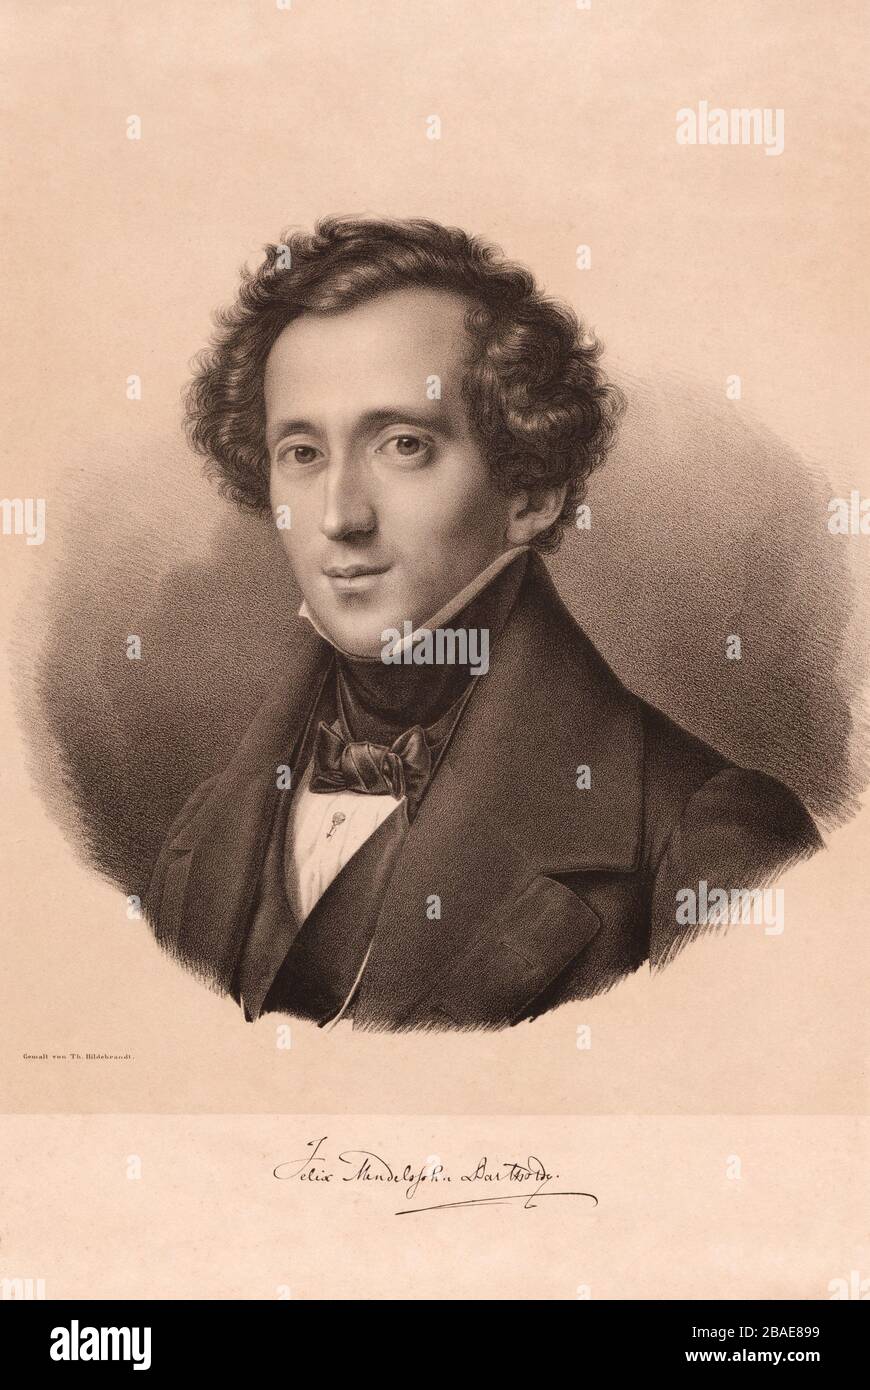 Bild von Jakob Ludwig Felix Mendelssohn Bartholdy (1809 - 1847), einem deutschen Komponisten, Pianisten, Organisten und Dirigenten der frühen Romantik. M Stockfoto